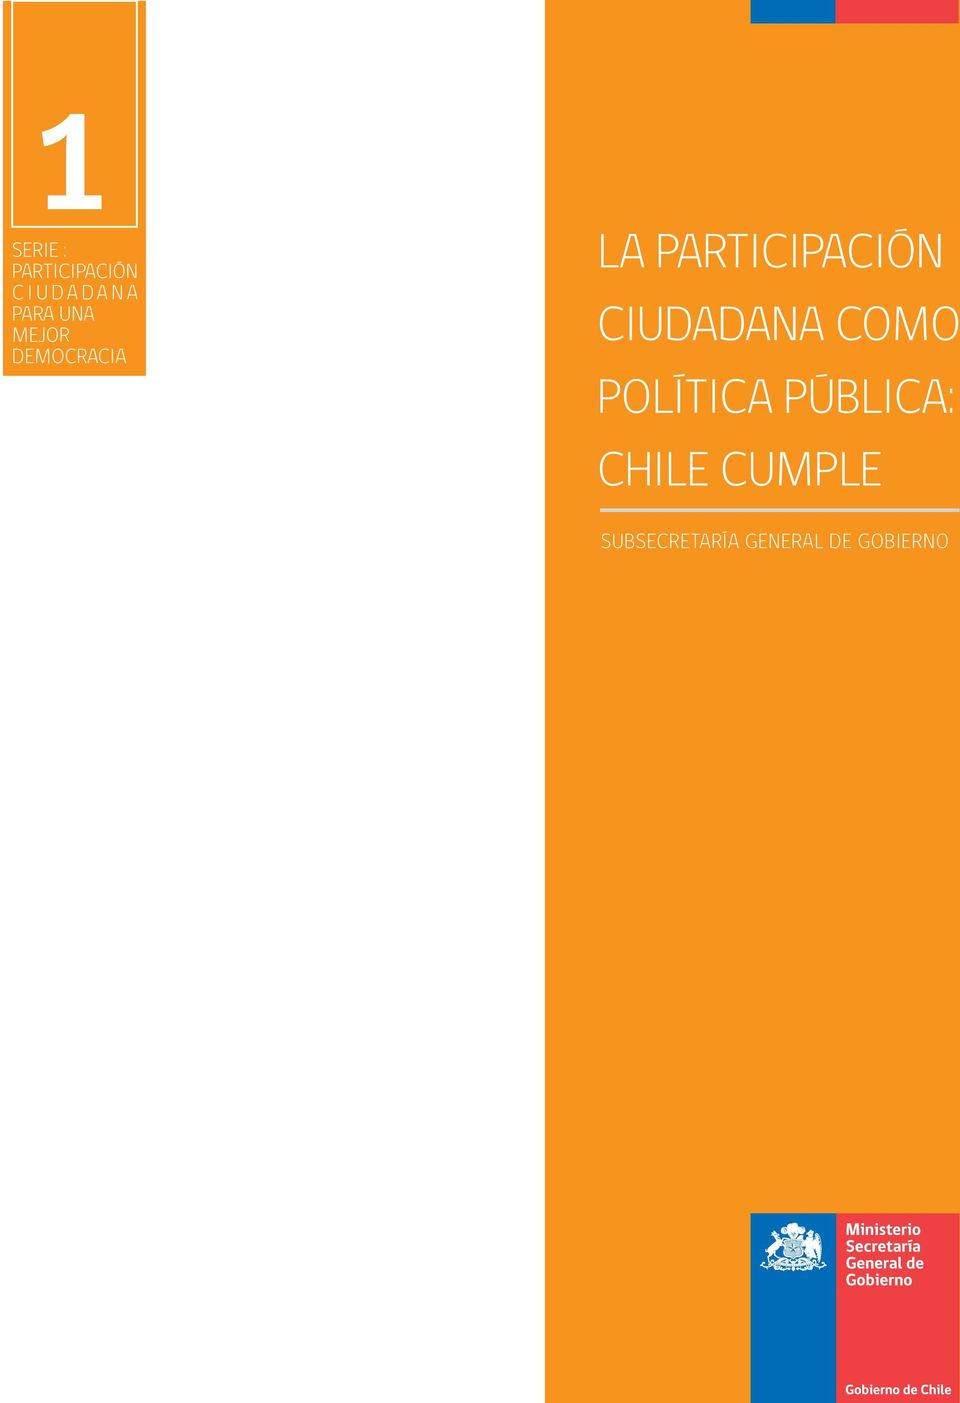 CIUDADANA COMO POLÍTICA PÚBLICA: CHILE